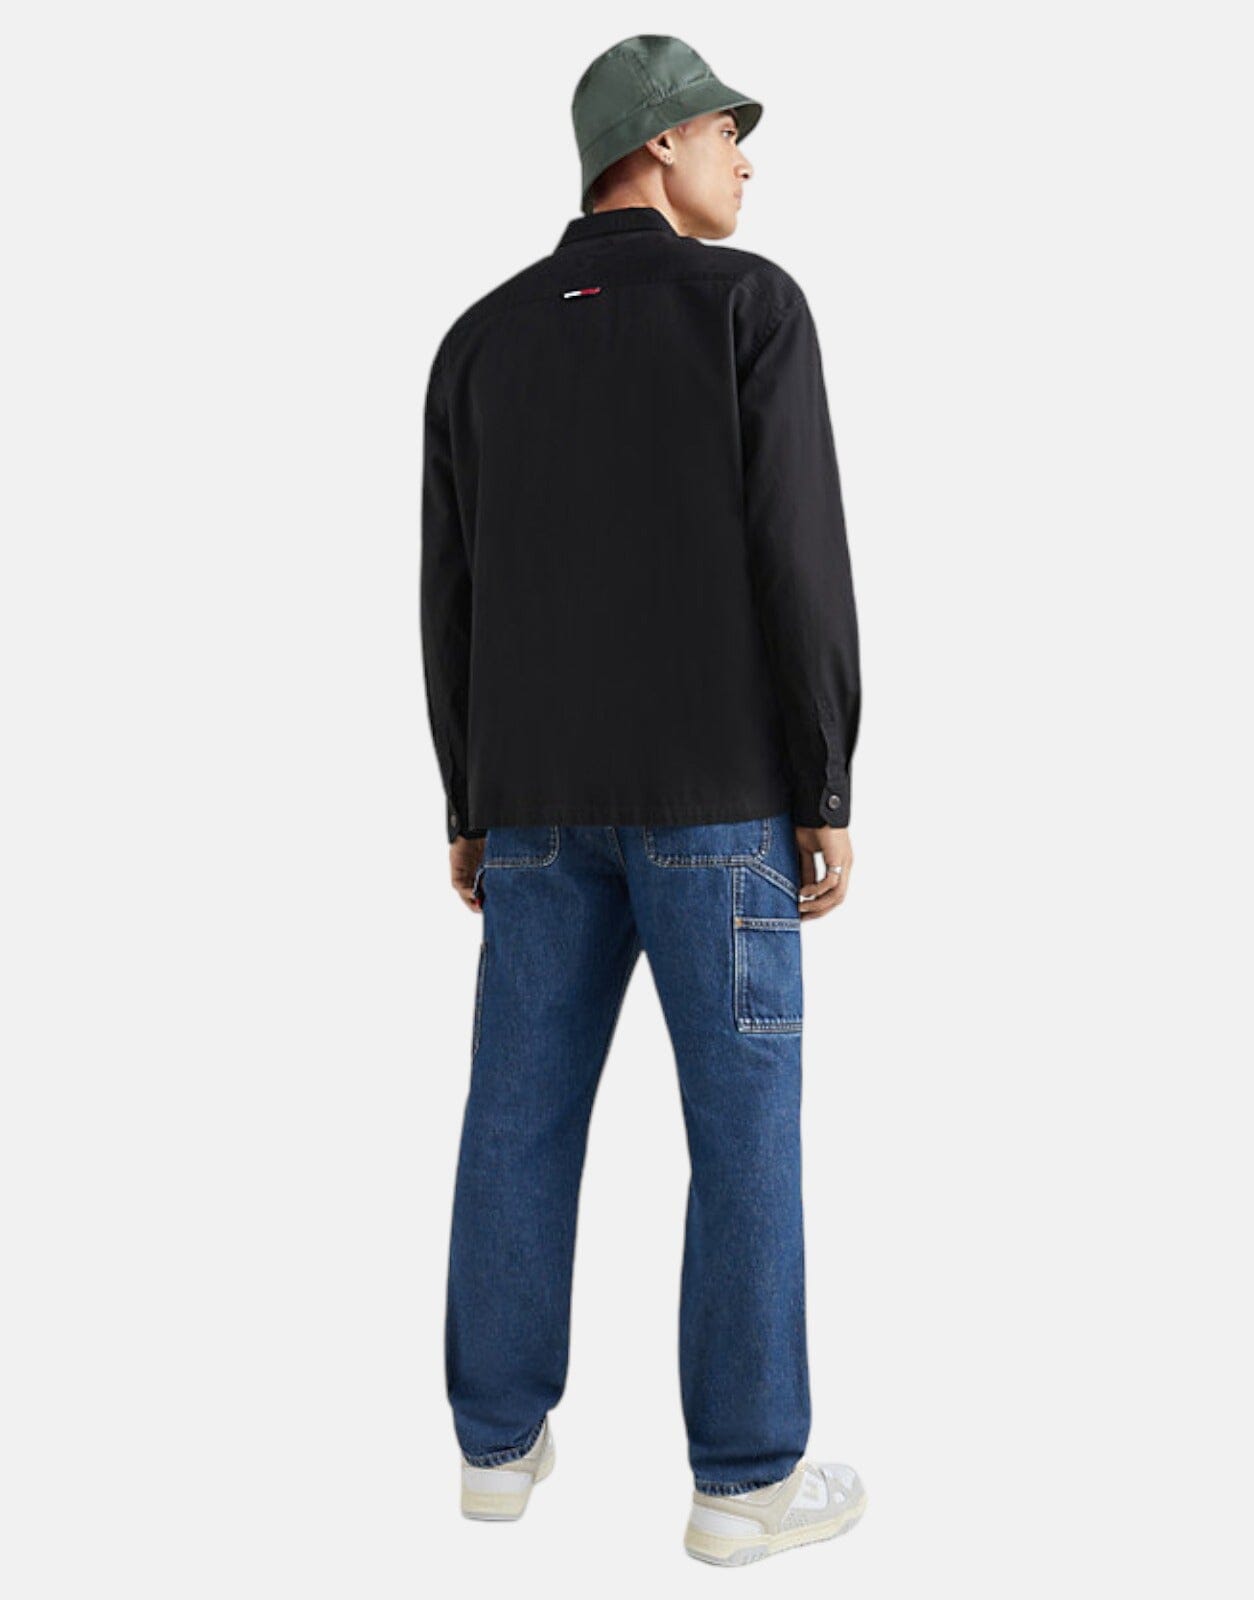 Tommy Hilfiger Classics Casual Fit Twill Overshirt - Subwear